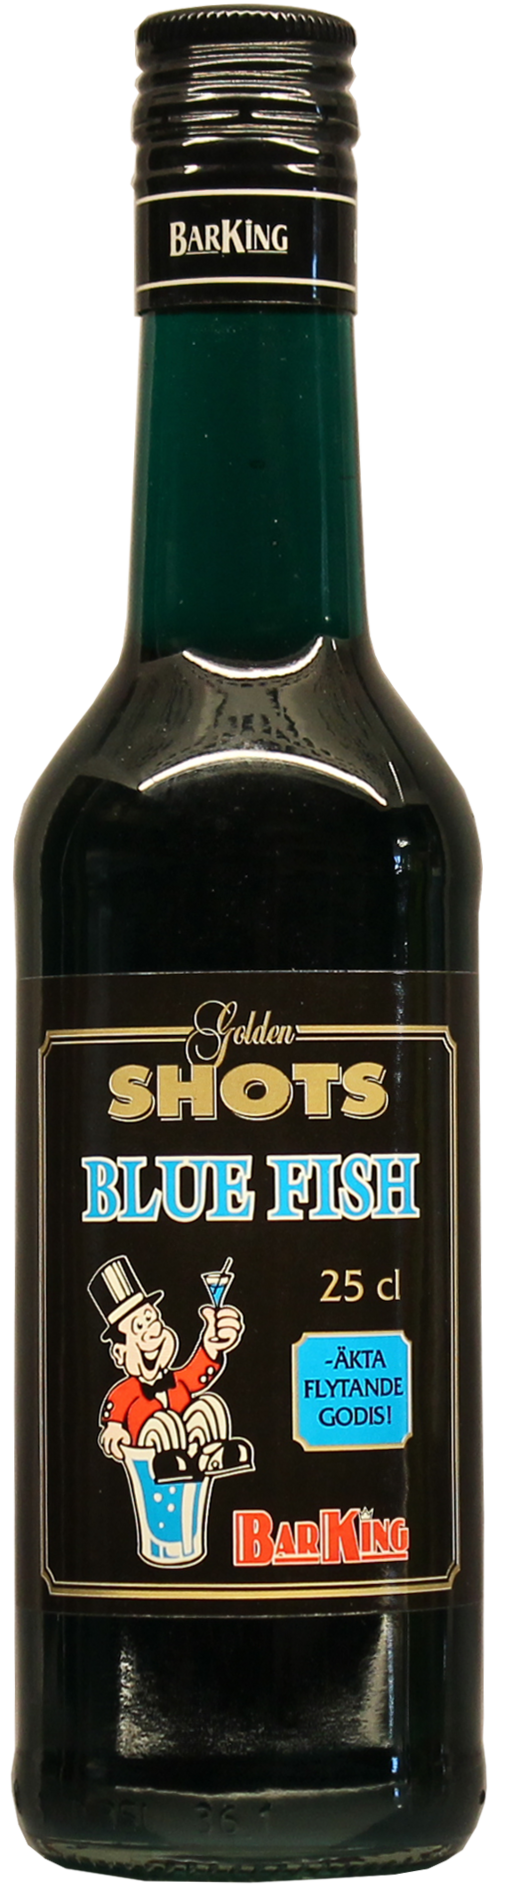 Golden Shots Blue Fish